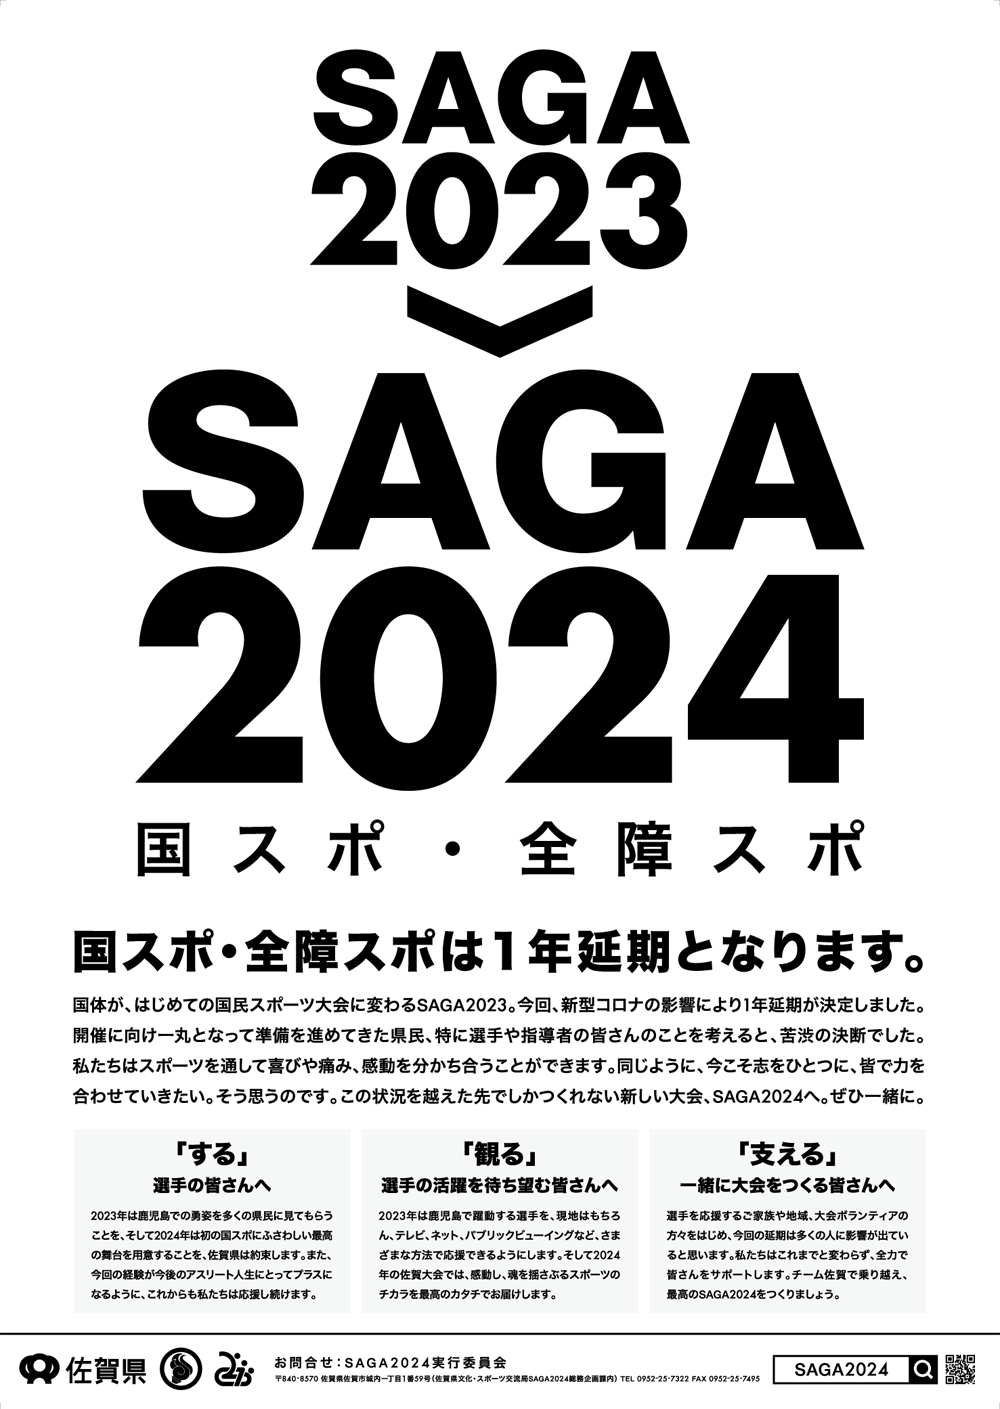 ポスター 23 24 ポスター メディア Saga24 国スポ 全障スポ